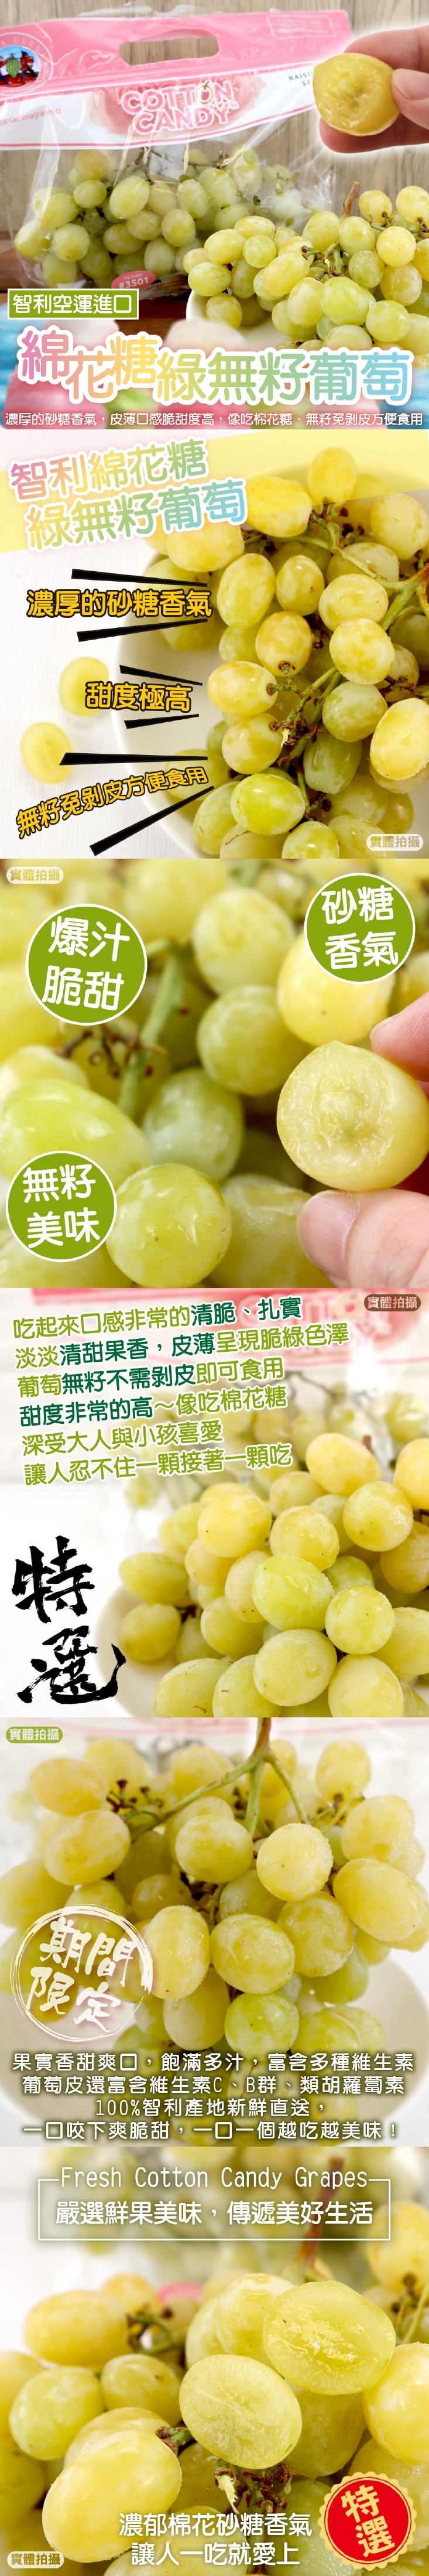 【果之蔬】智利棉花糖綠無籽葡萄 900g±10%/袋